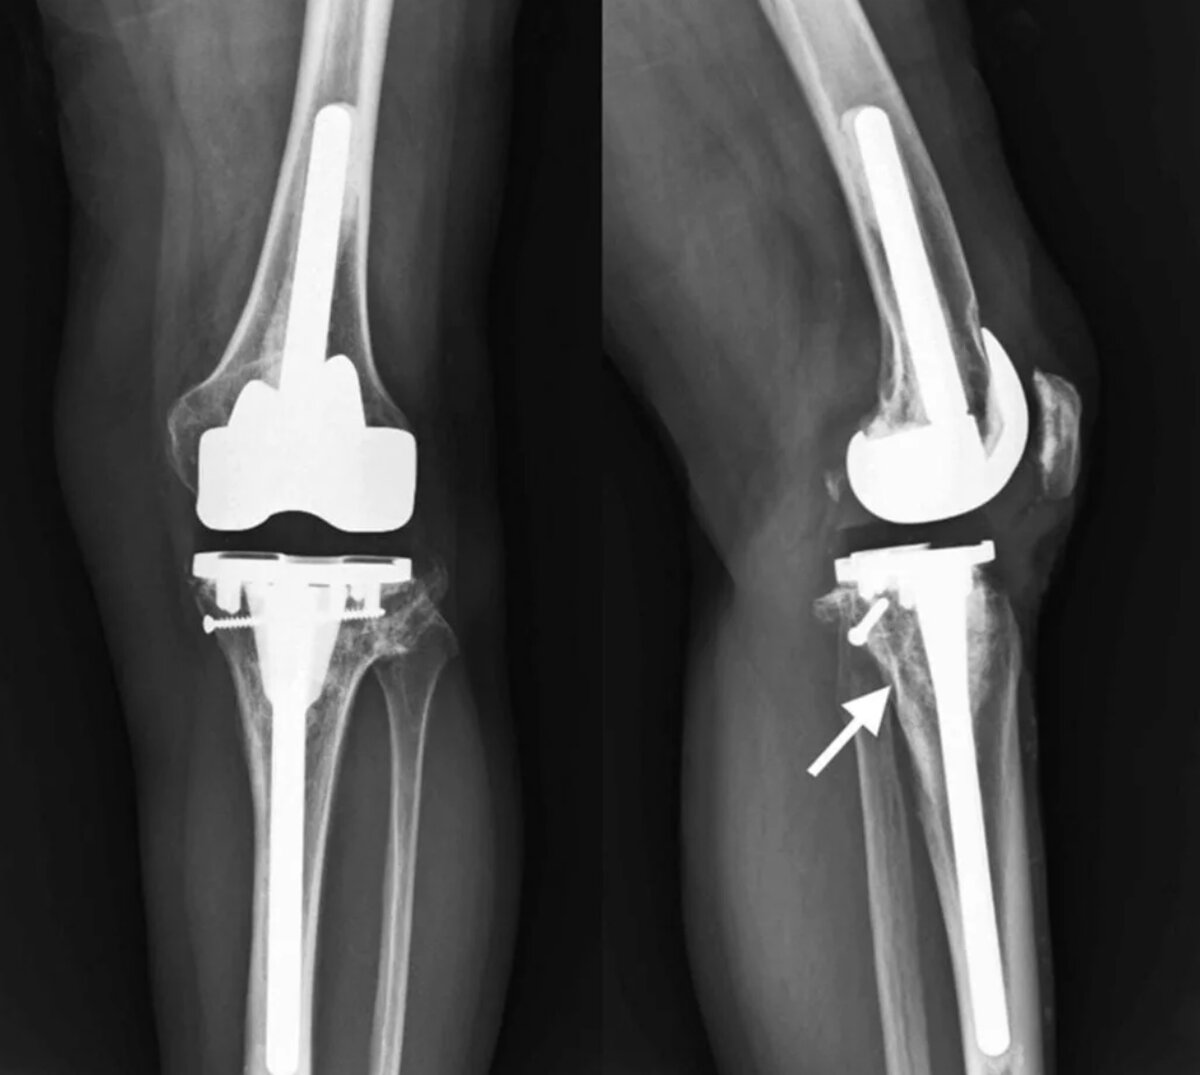 Операция по замене коленного сустава москва. Эндопротез коленного сустава. Коленный эндопротез Stryker. Эндопротезирование коленного сустава операция. Эндопротез коленного сустава Maxx Orthopedics.